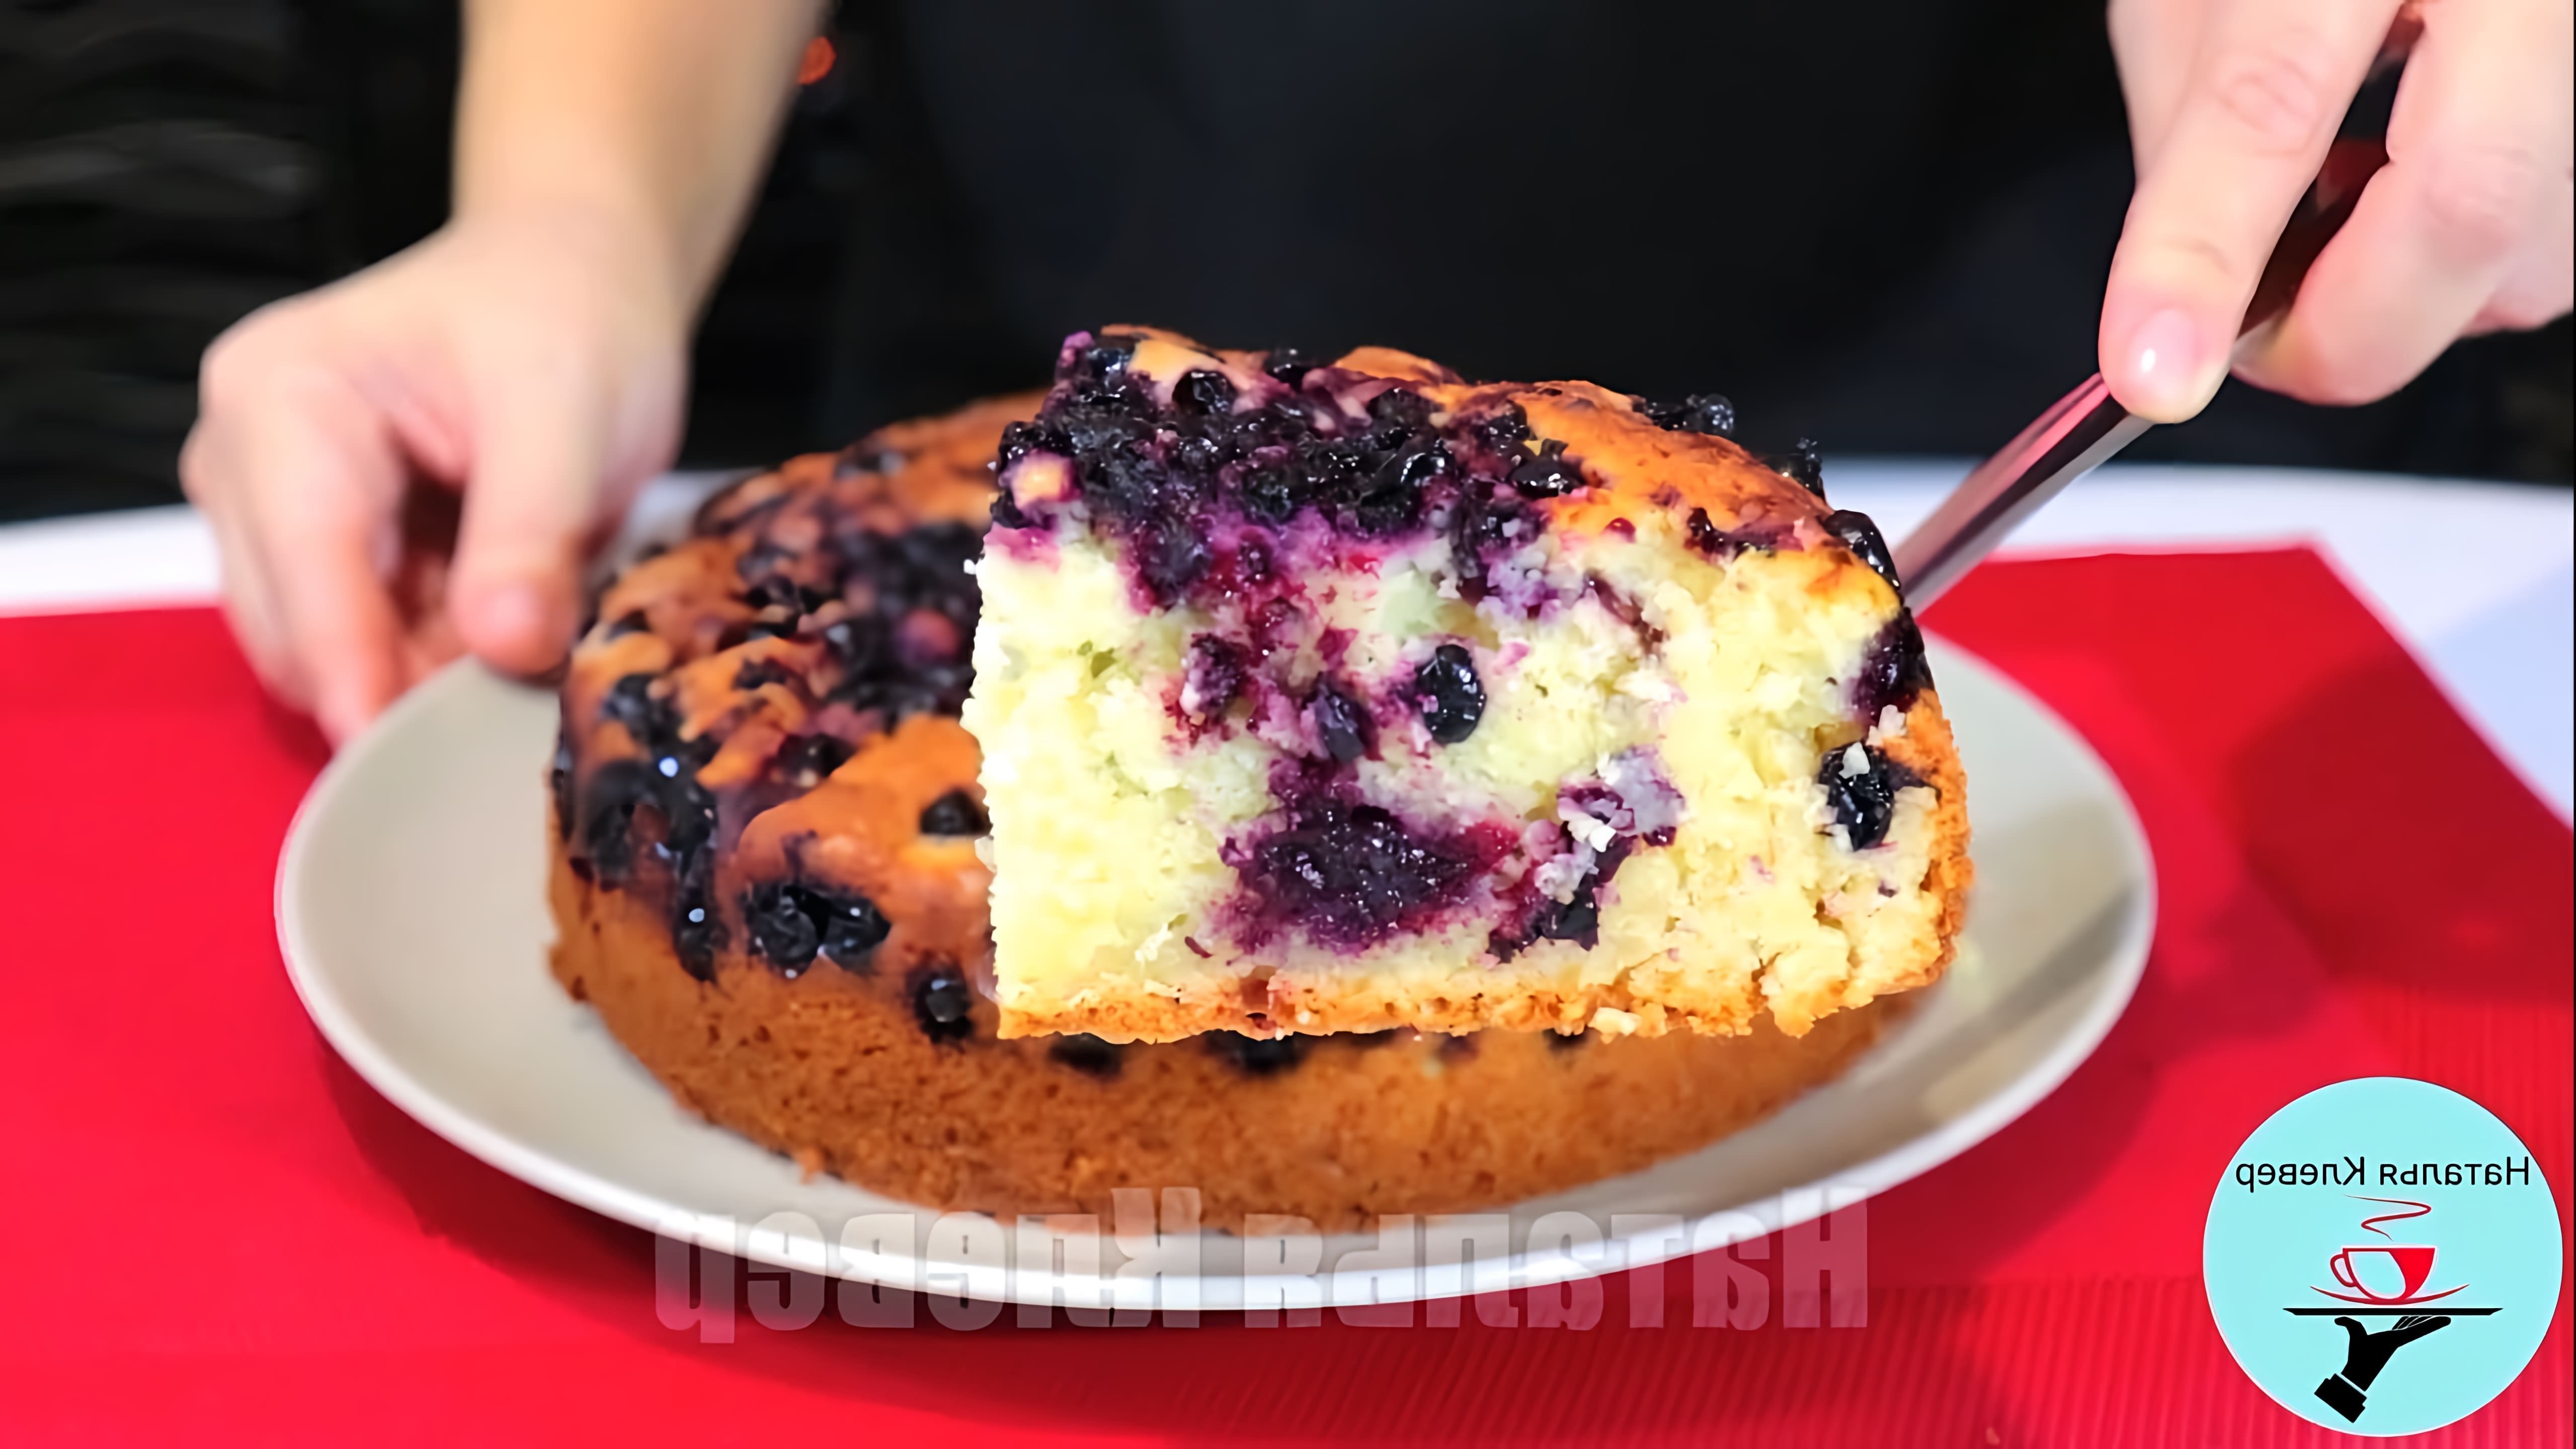 В этом видео демонстрируется процесс приготовления воздушного пирога на кефире с замороженными ягодами